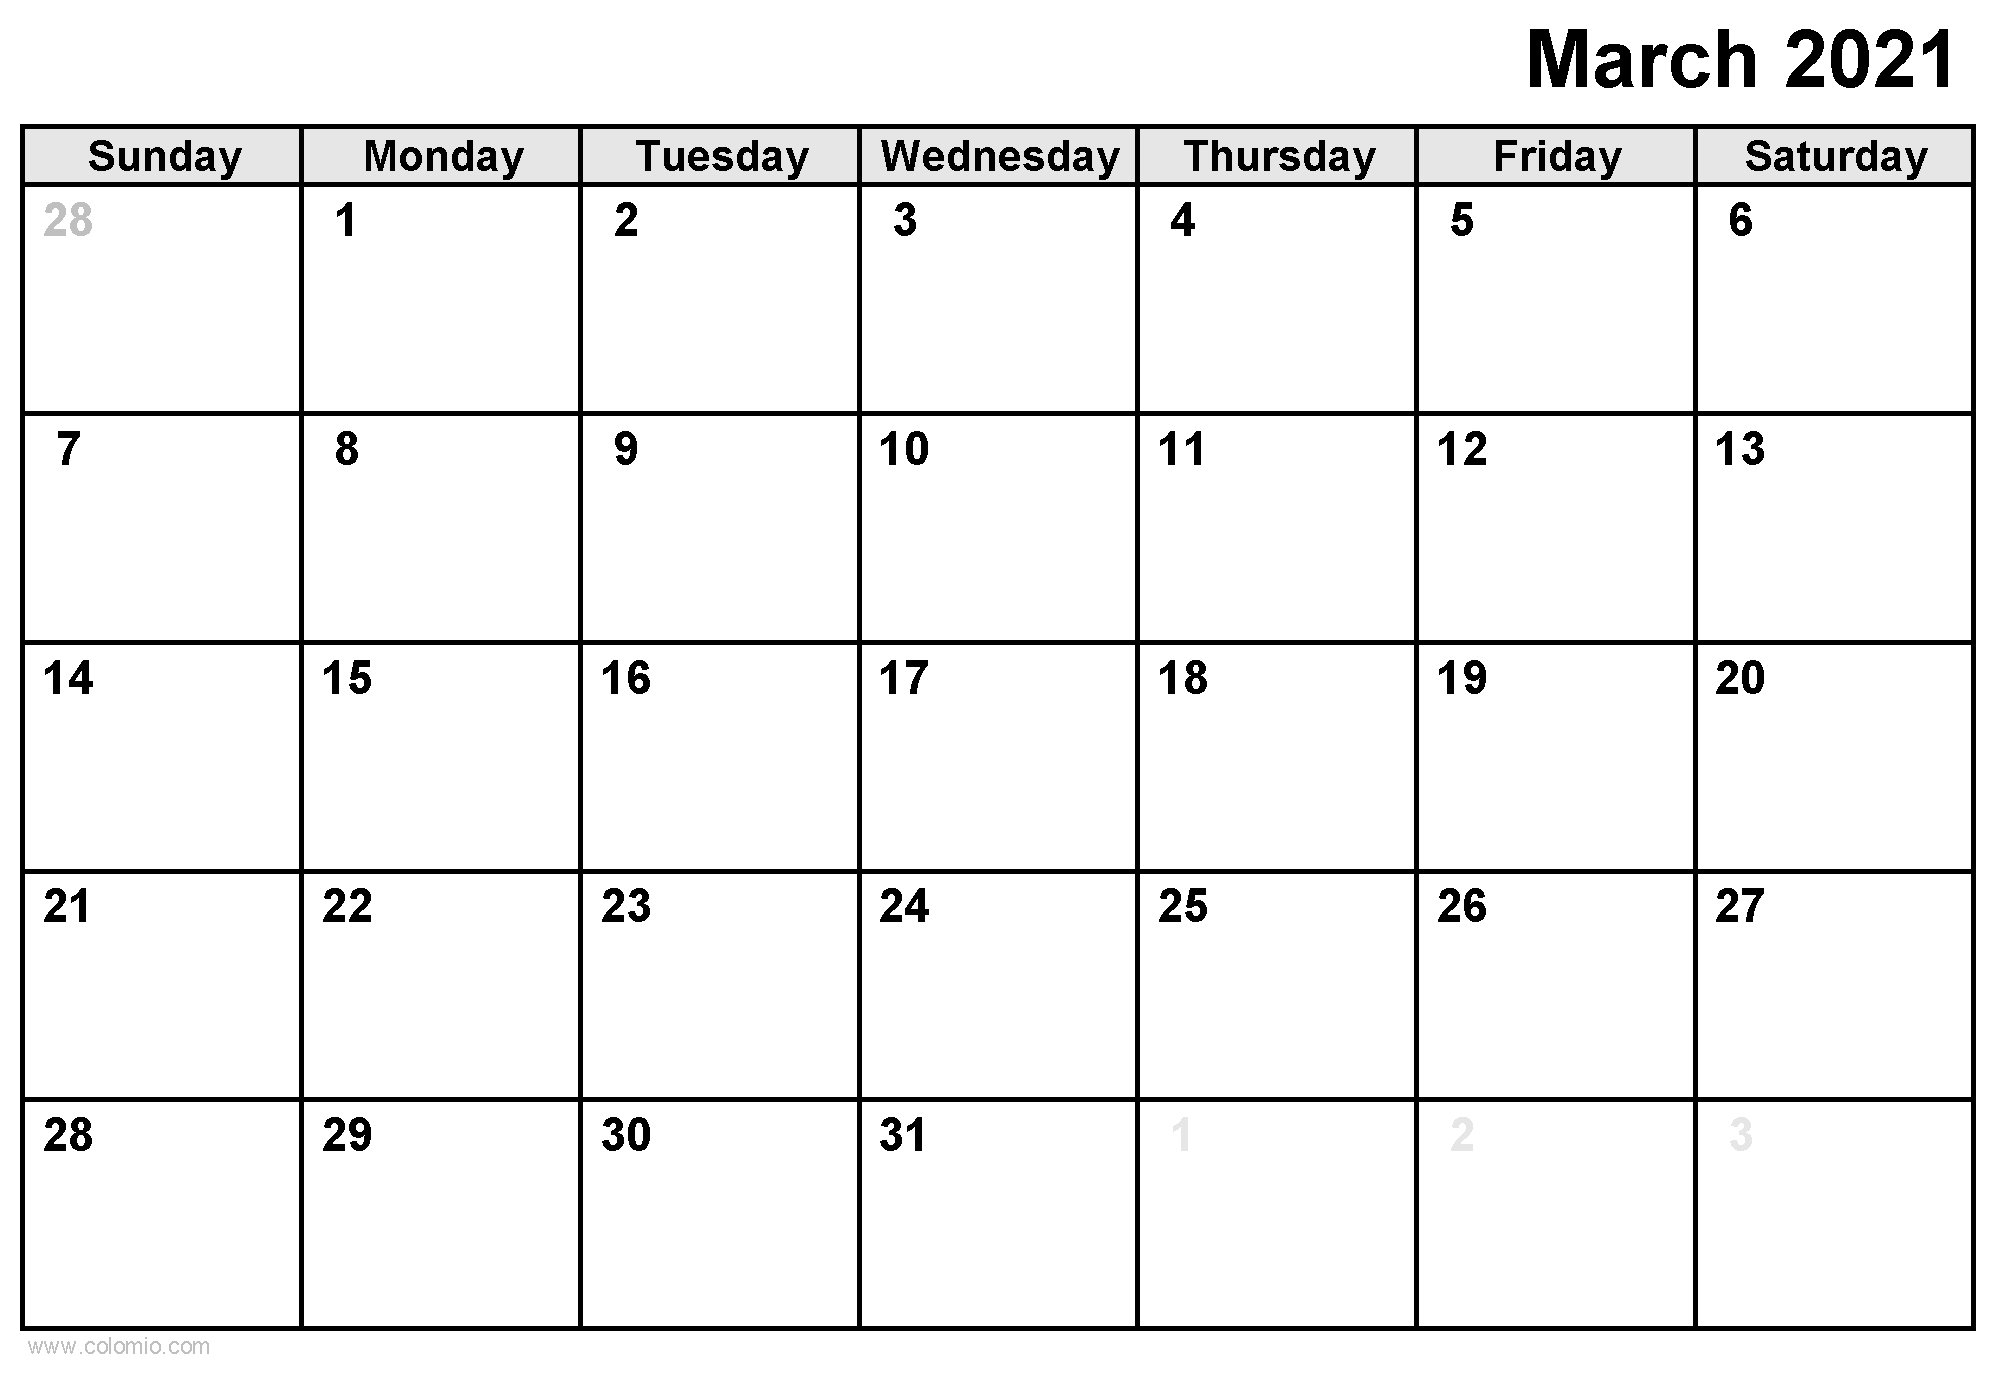 March 2021 Calendar printable